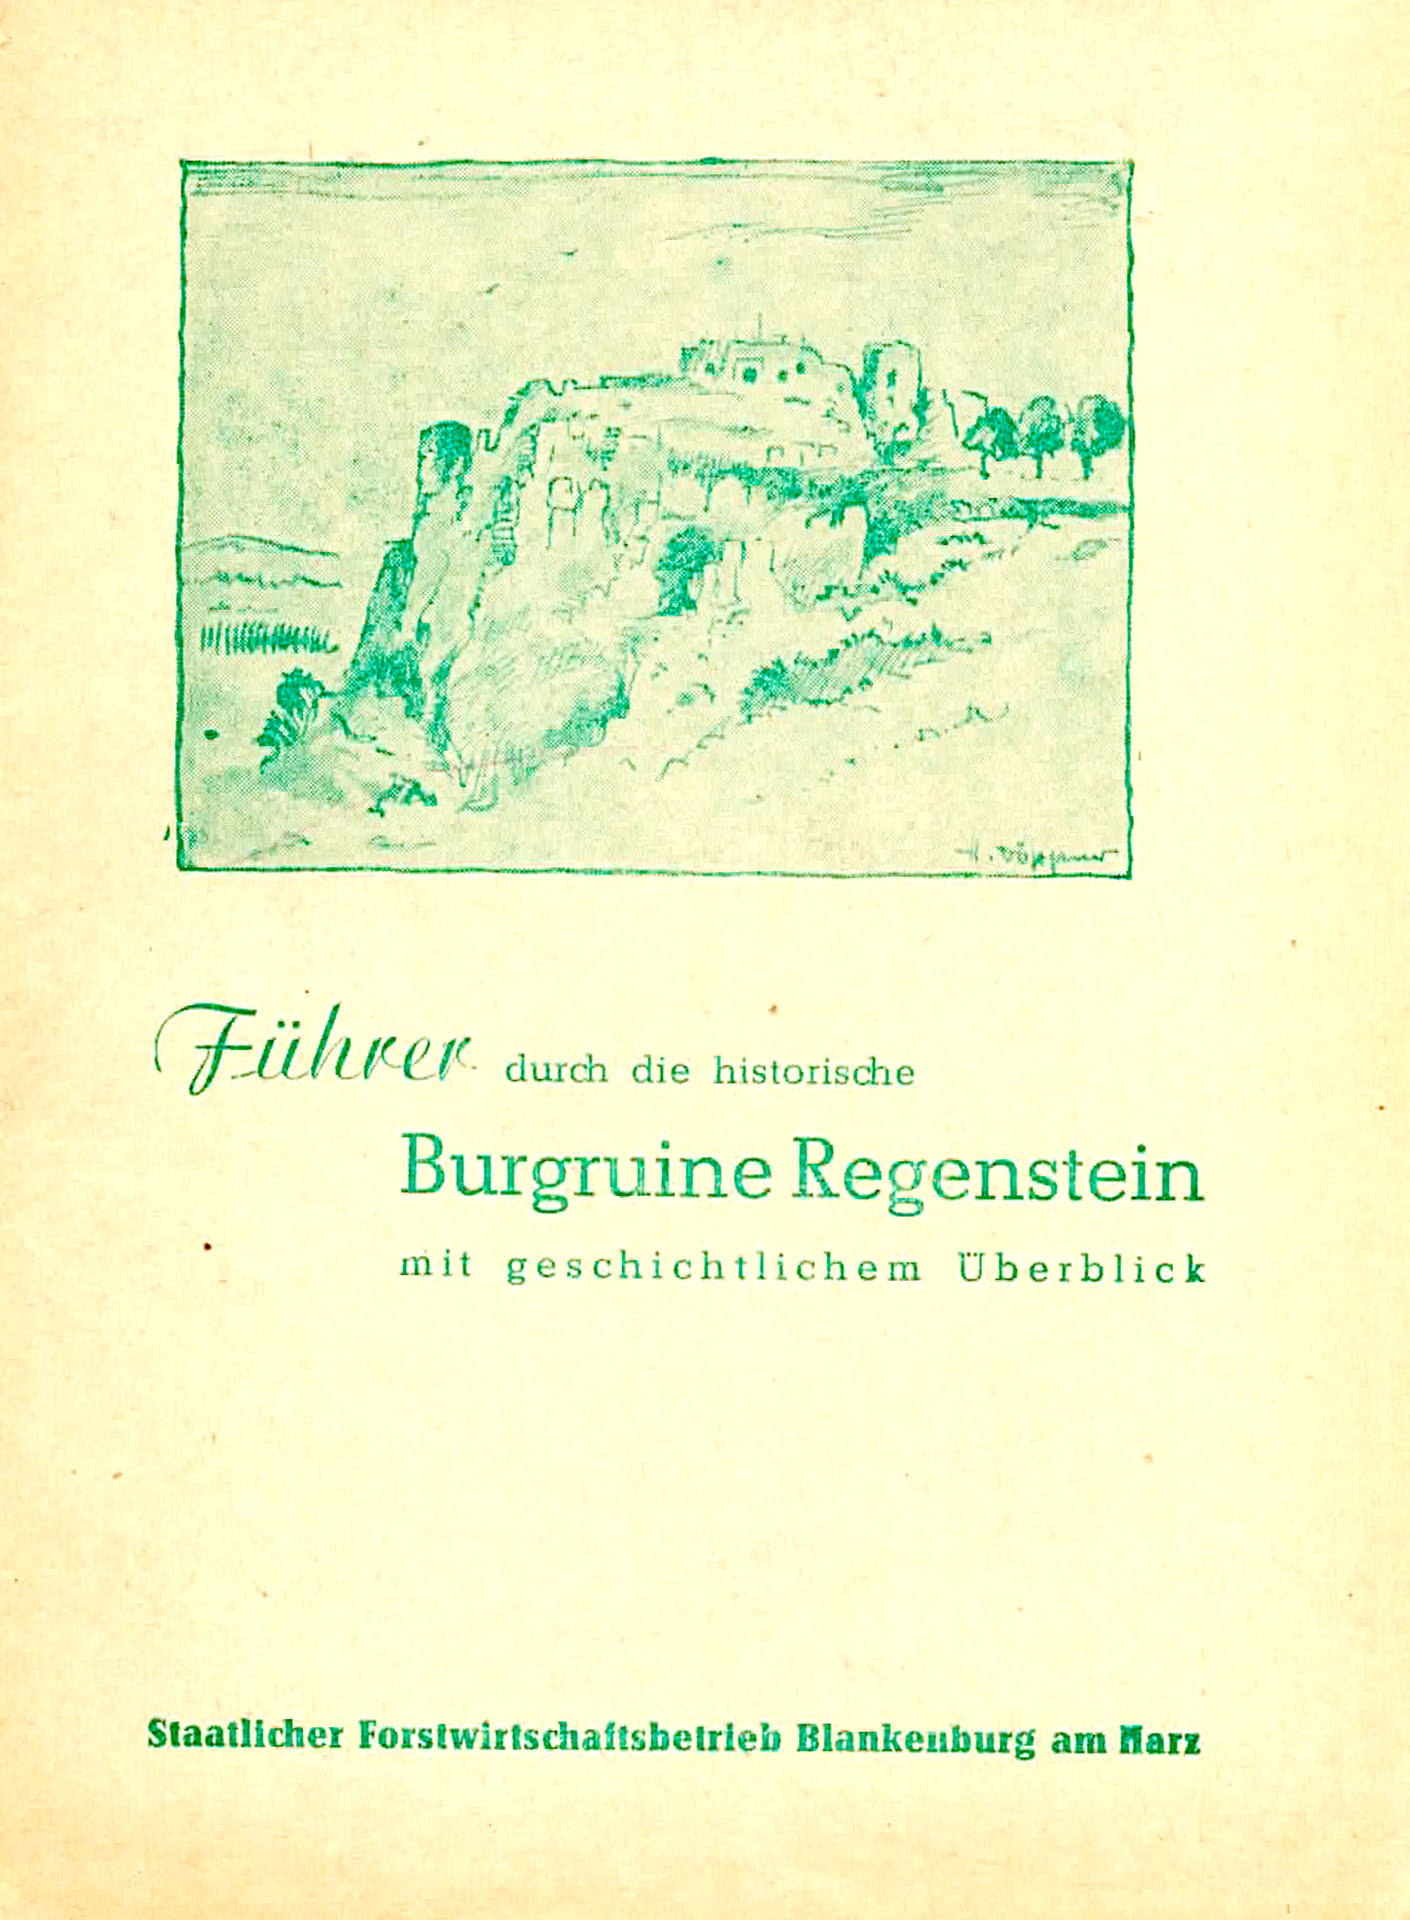 Führer durch die historische Burgruine Regenstein mit geschichtlichem Überblick - Staatlicher Forstwirtschaftsbetrieb Blankenburg am Harz